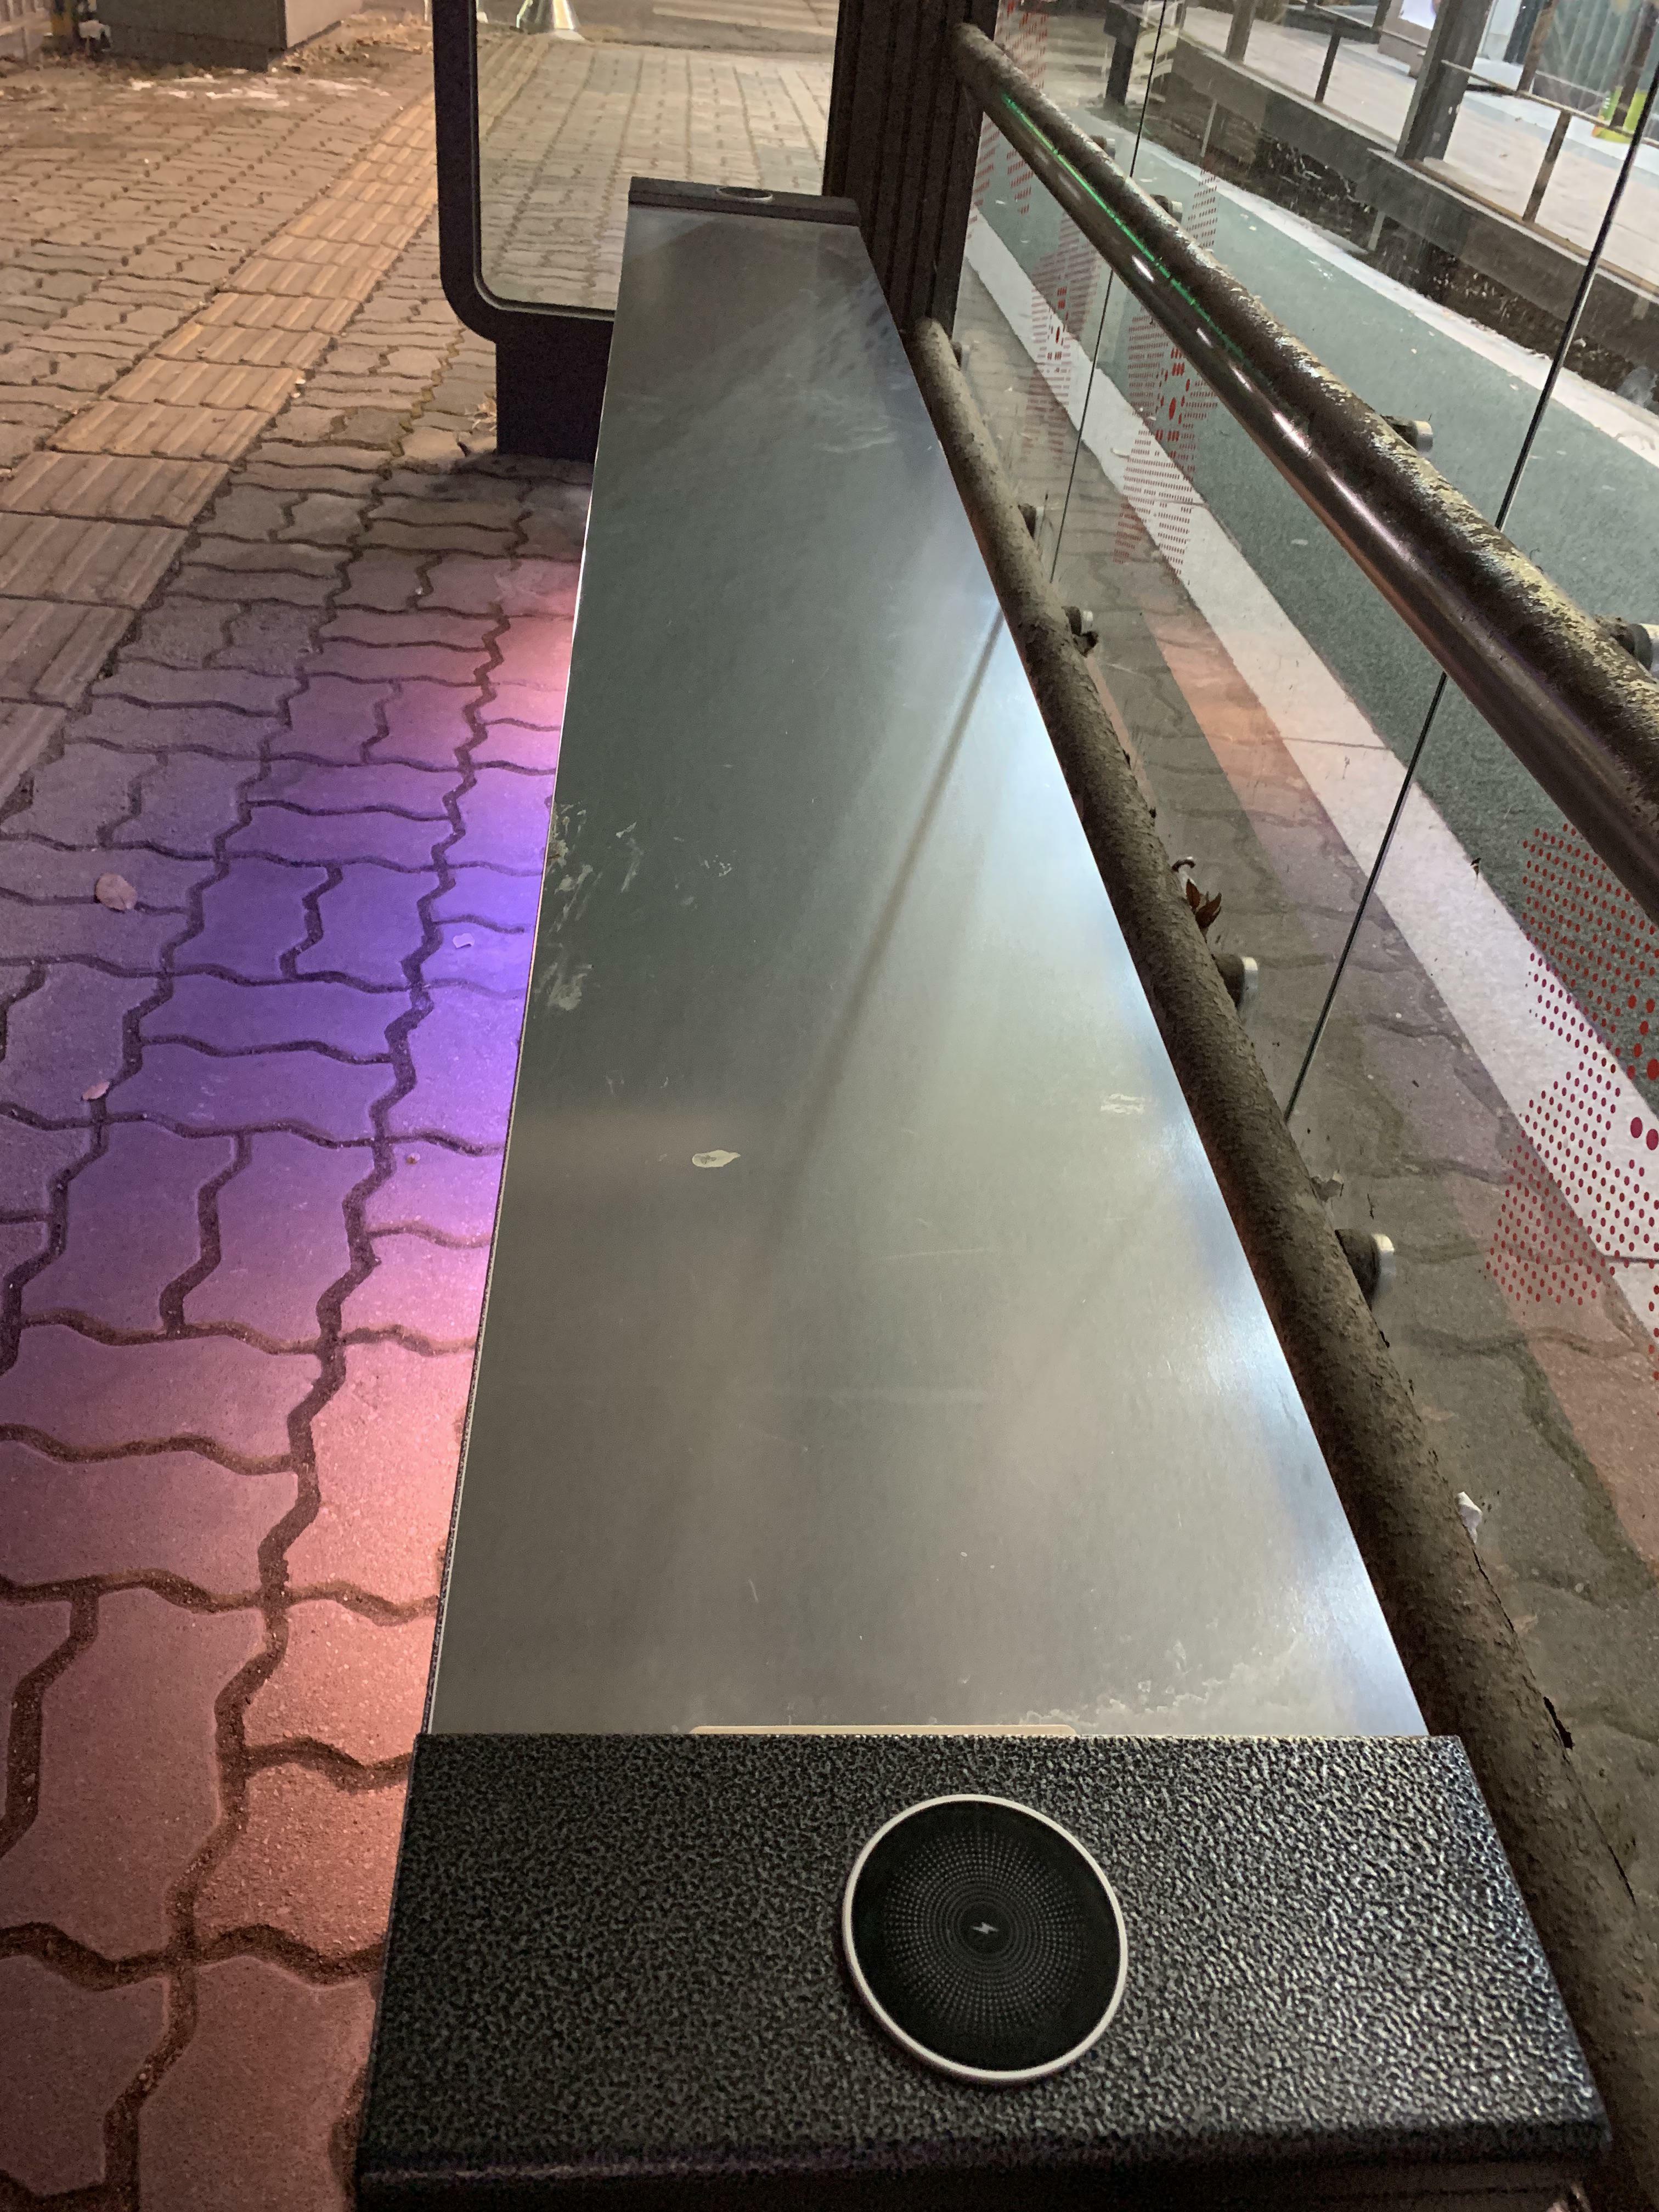 Ce banc chauffé avec un socle de recharge sans fil pour ton téléphone à un arrêt de bus en Corée du Sud.